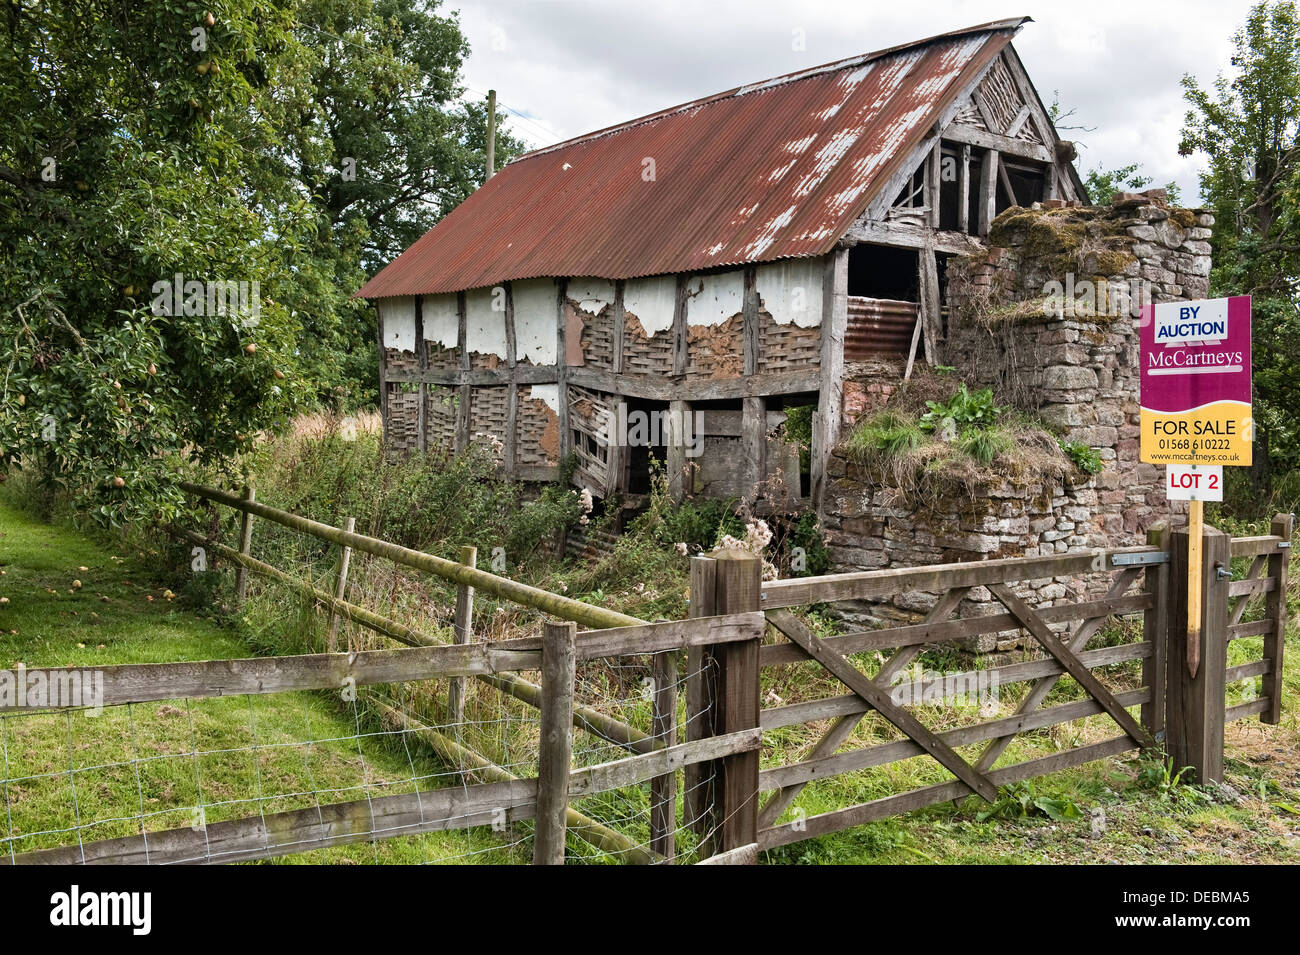 Un ancien du xvie siècle et tumbledown cottage à ossature bois à vendre aux enchères, Herefordshire, UK Banque D'Images